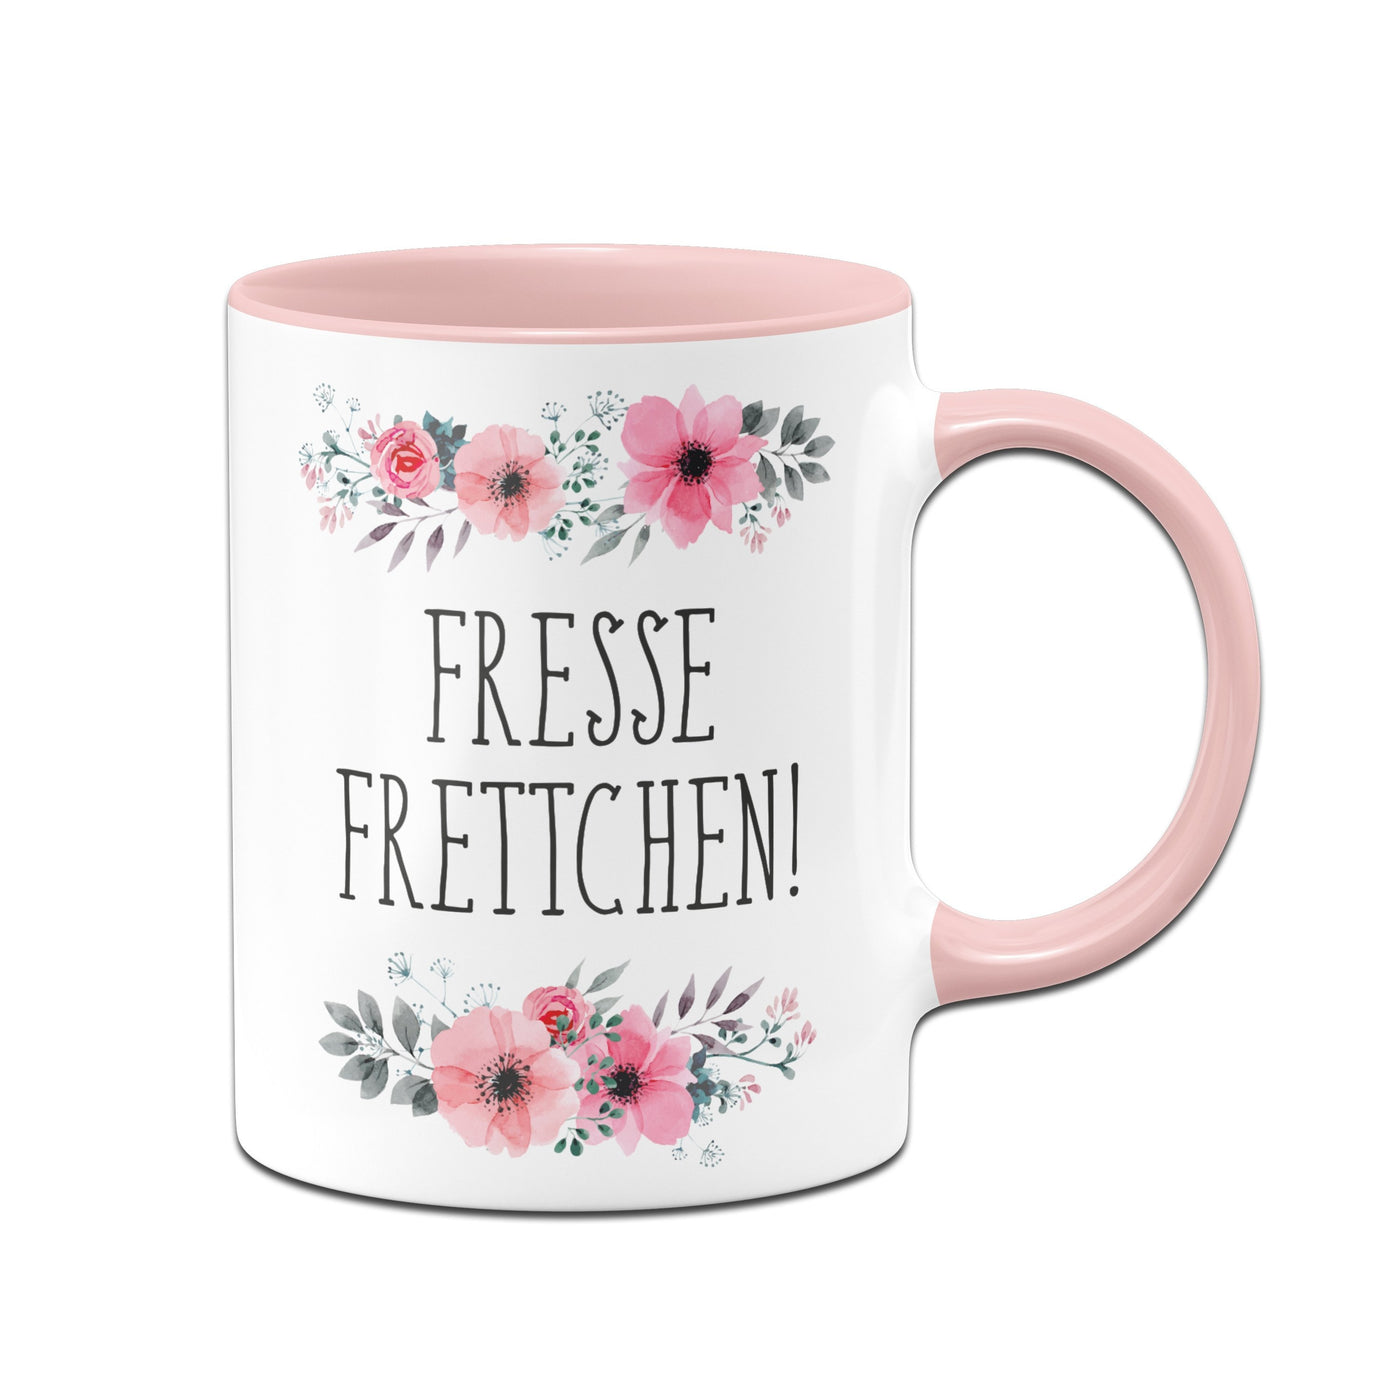 Bild: Tasse - Fresse Frettchen! - blumig Geschenkidee